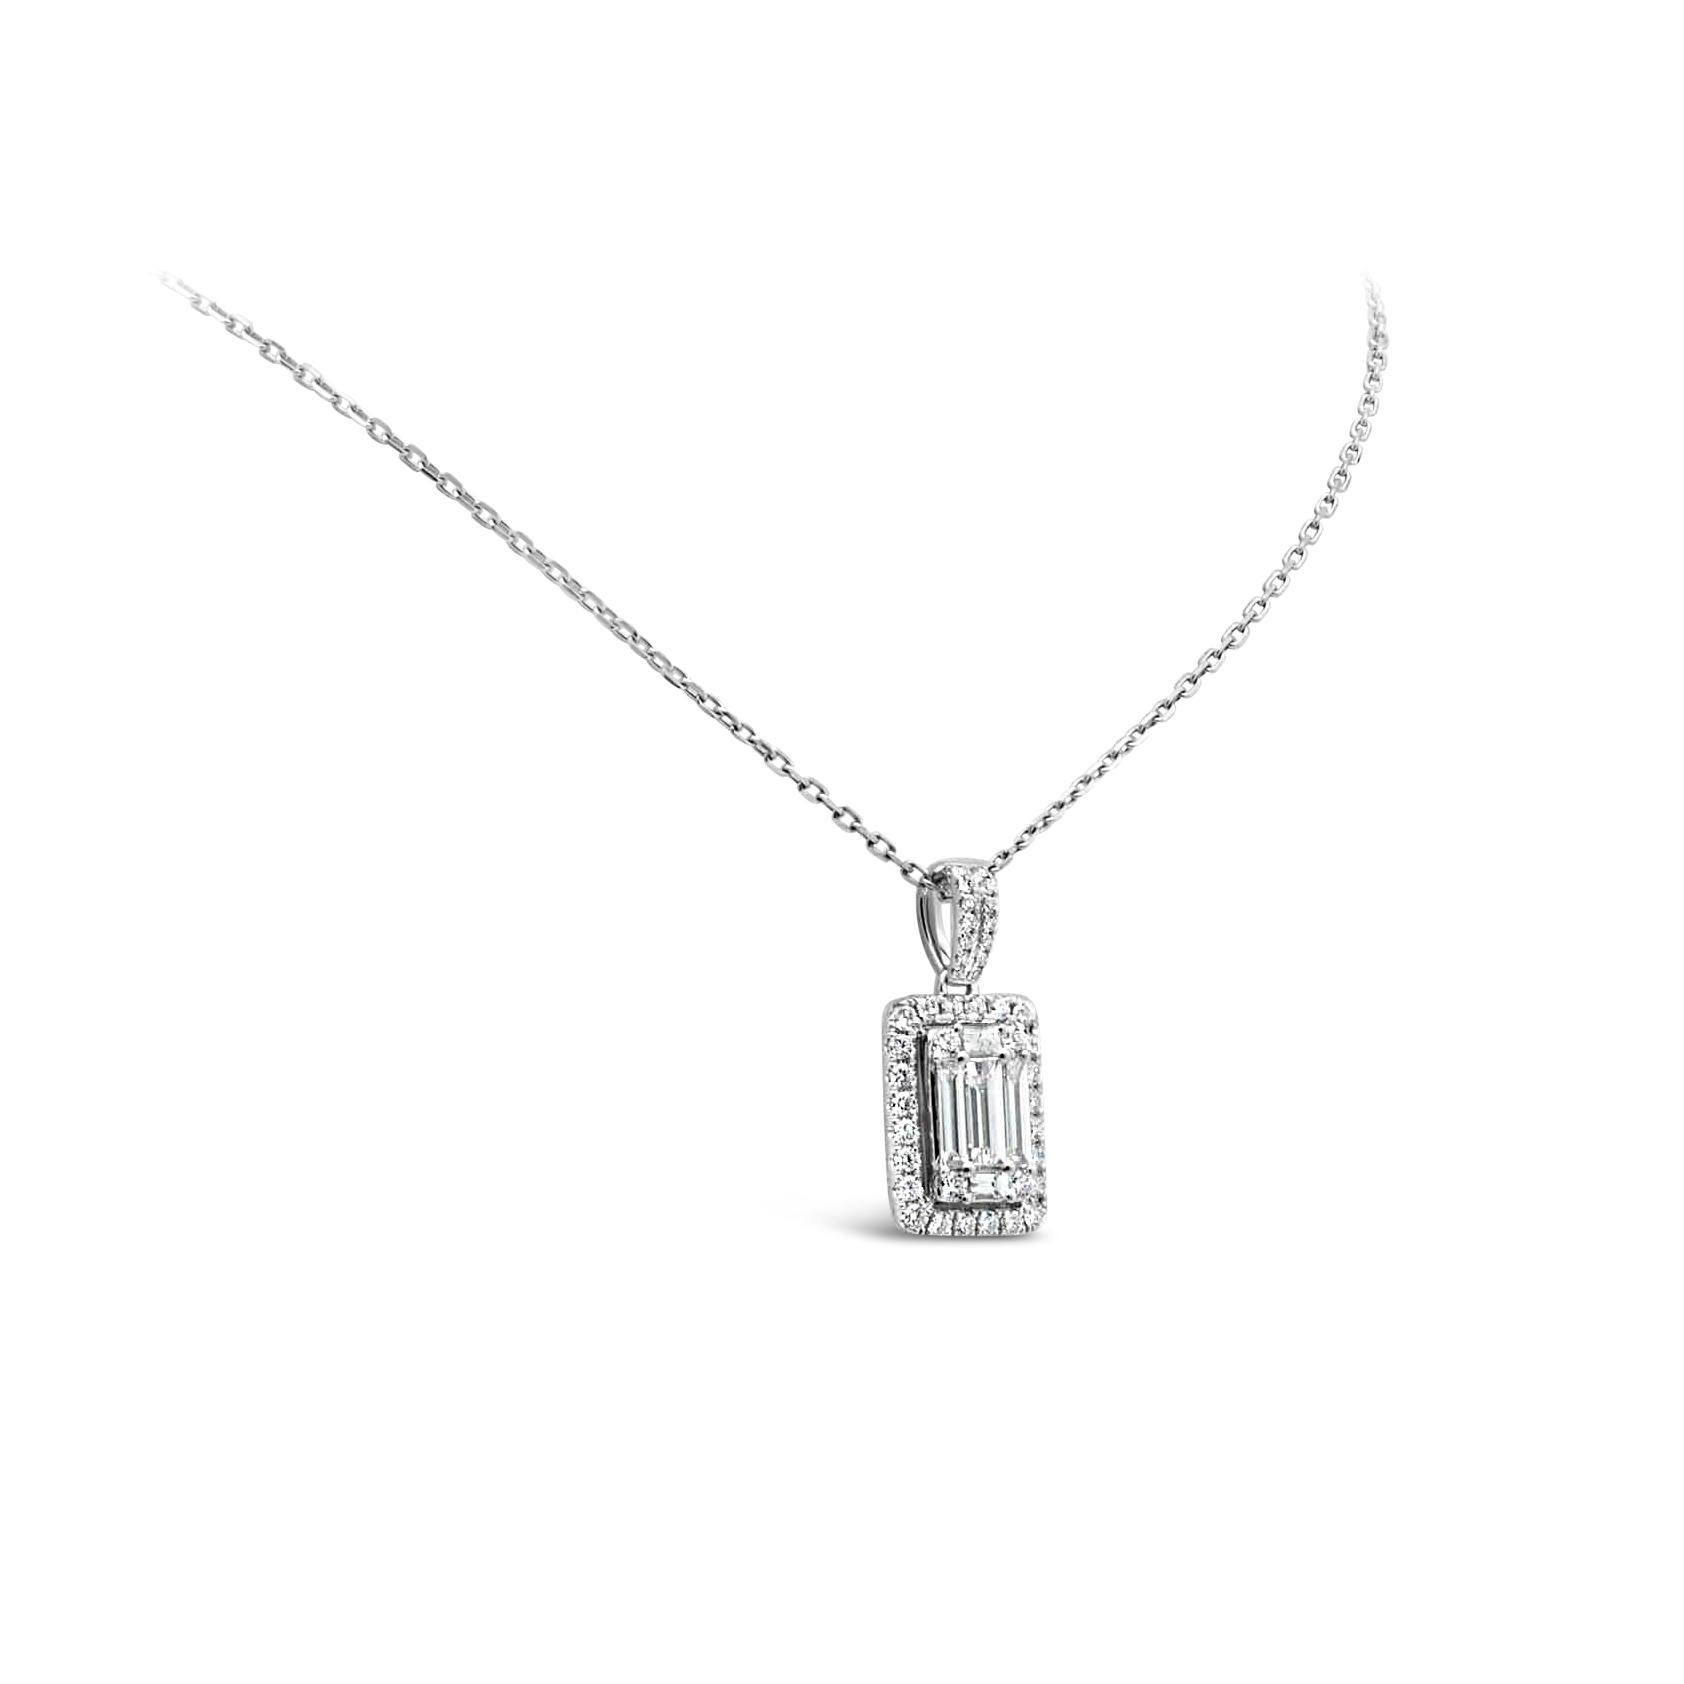 Un magnifique collier, mettant en valeur des diamants baguettes reliés pour ressembler à un seul gros diamant taille émeraude entouré d'un halo de diamants sur une balle accentuée et suspendu à une chaîne en or blanc 18K. Les diamants pèsent au